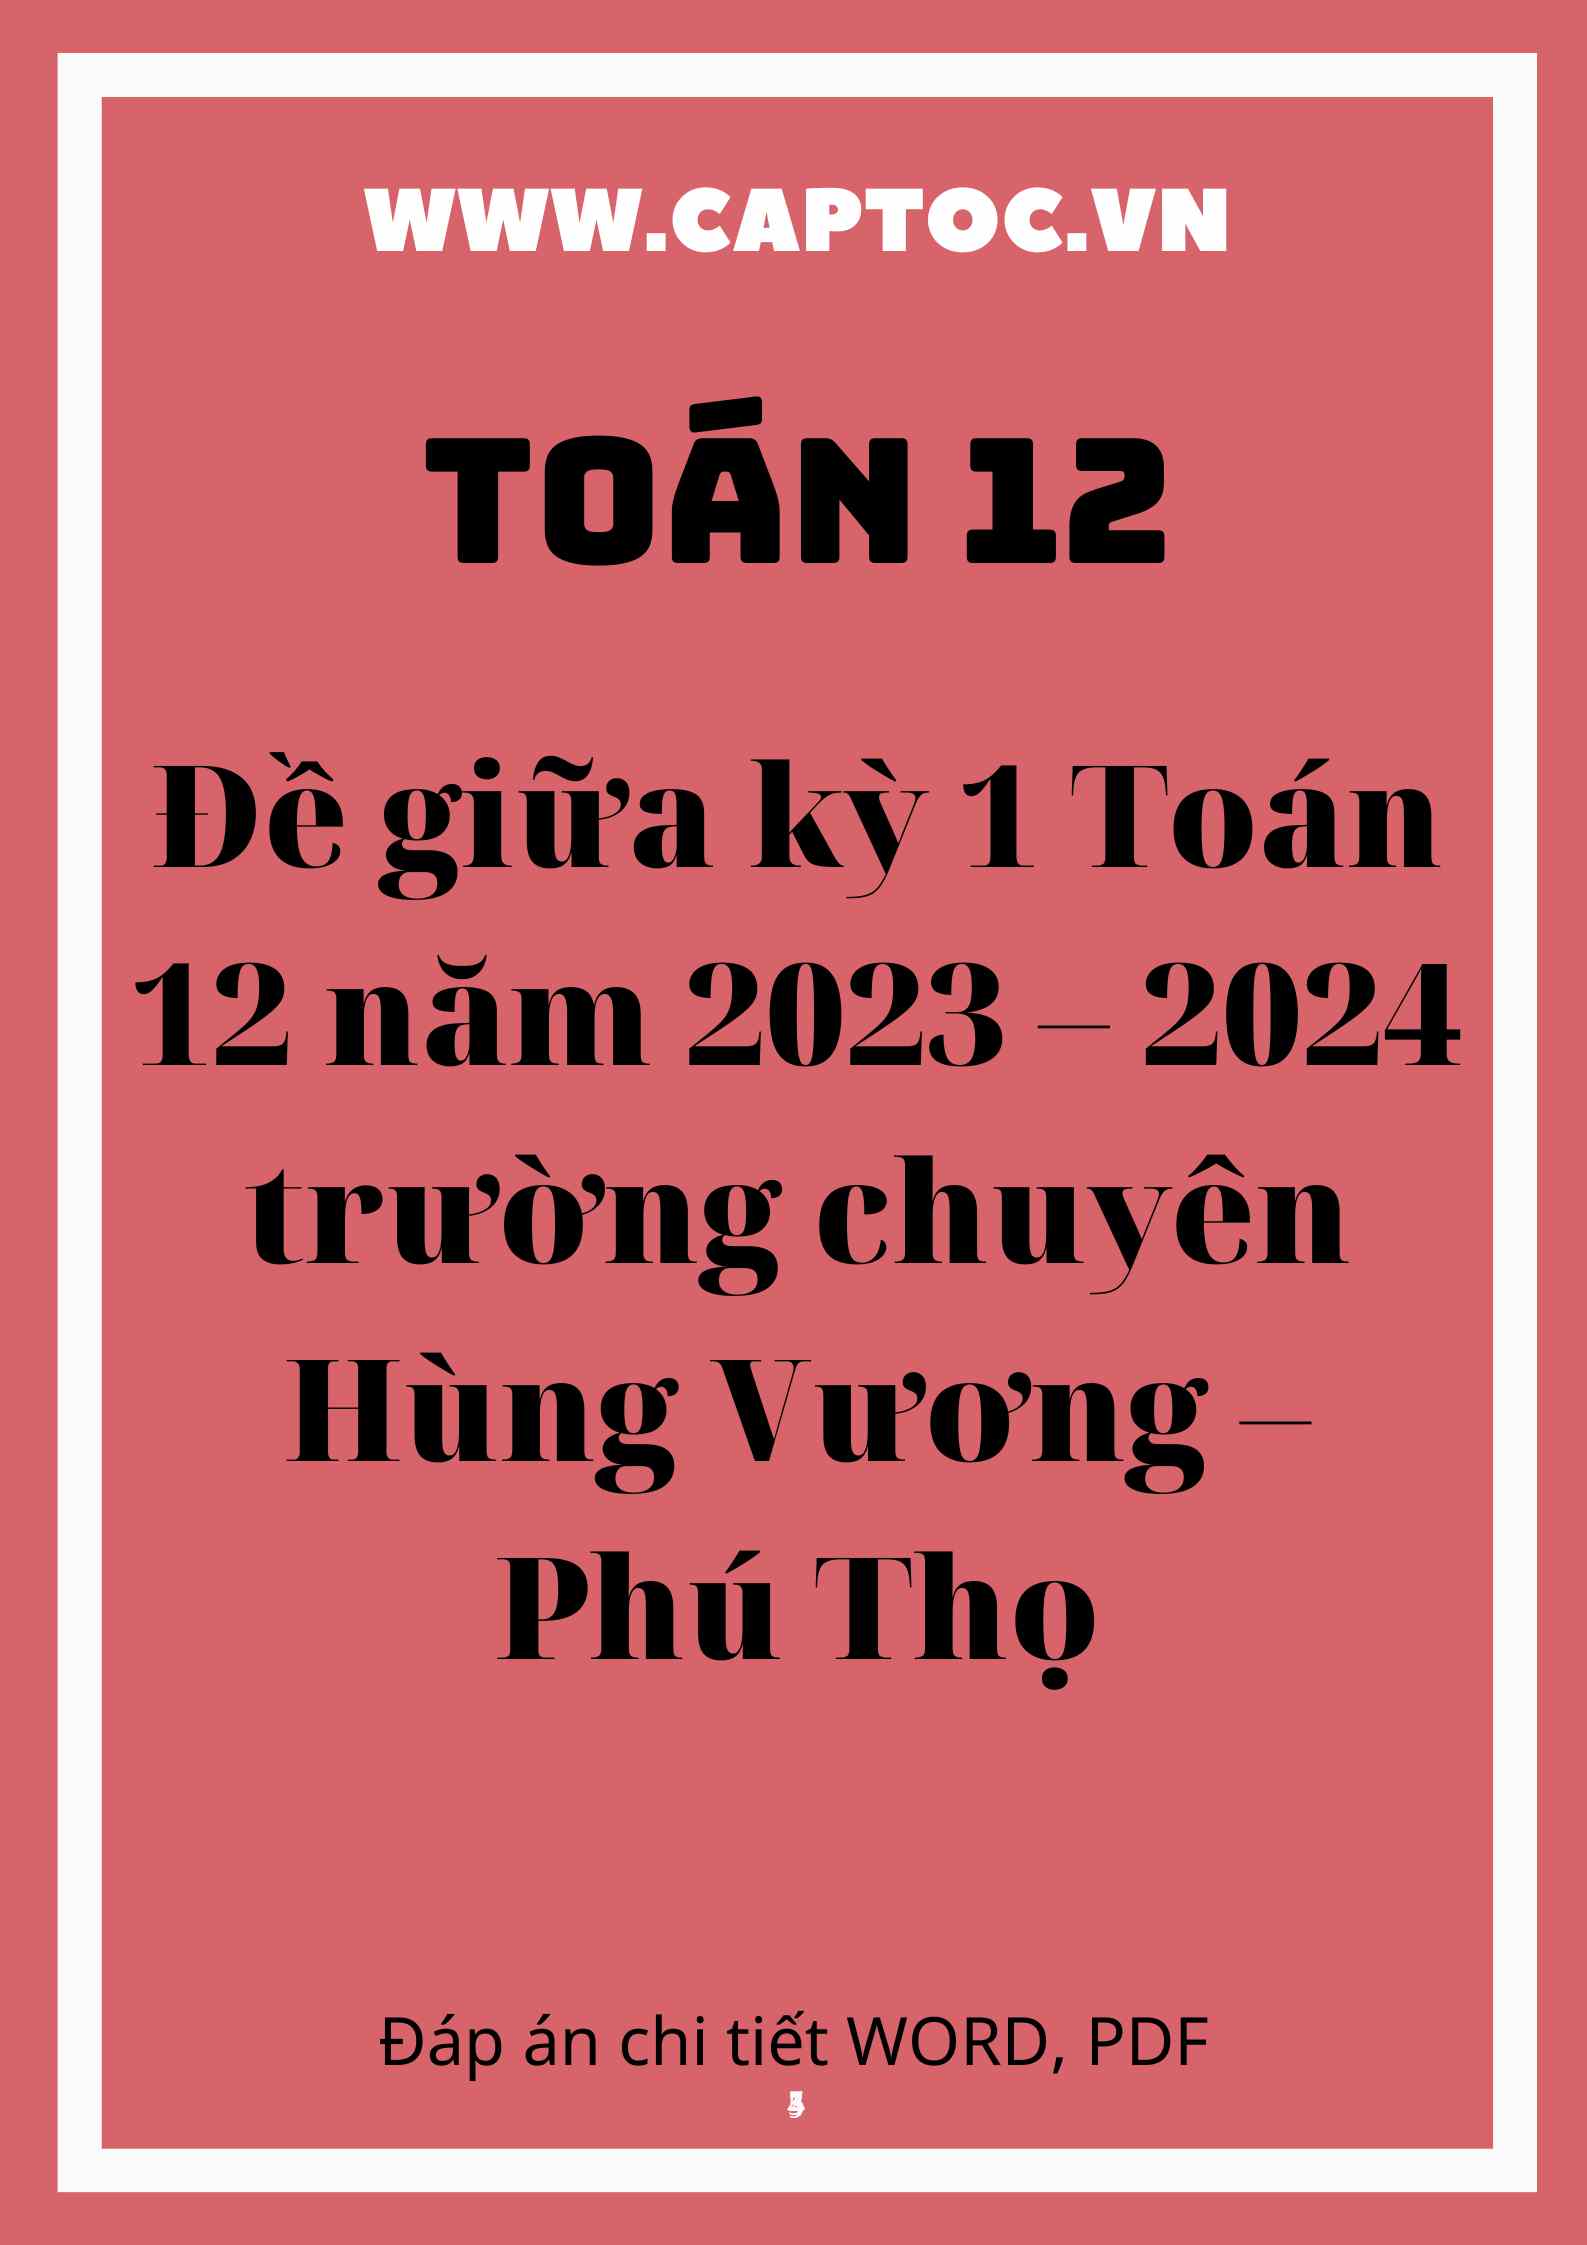 Đề giữa kỳ 1 Toán 12 năm 2023 – 2024 trường chuyên Hùng Vương – Phú Thọ